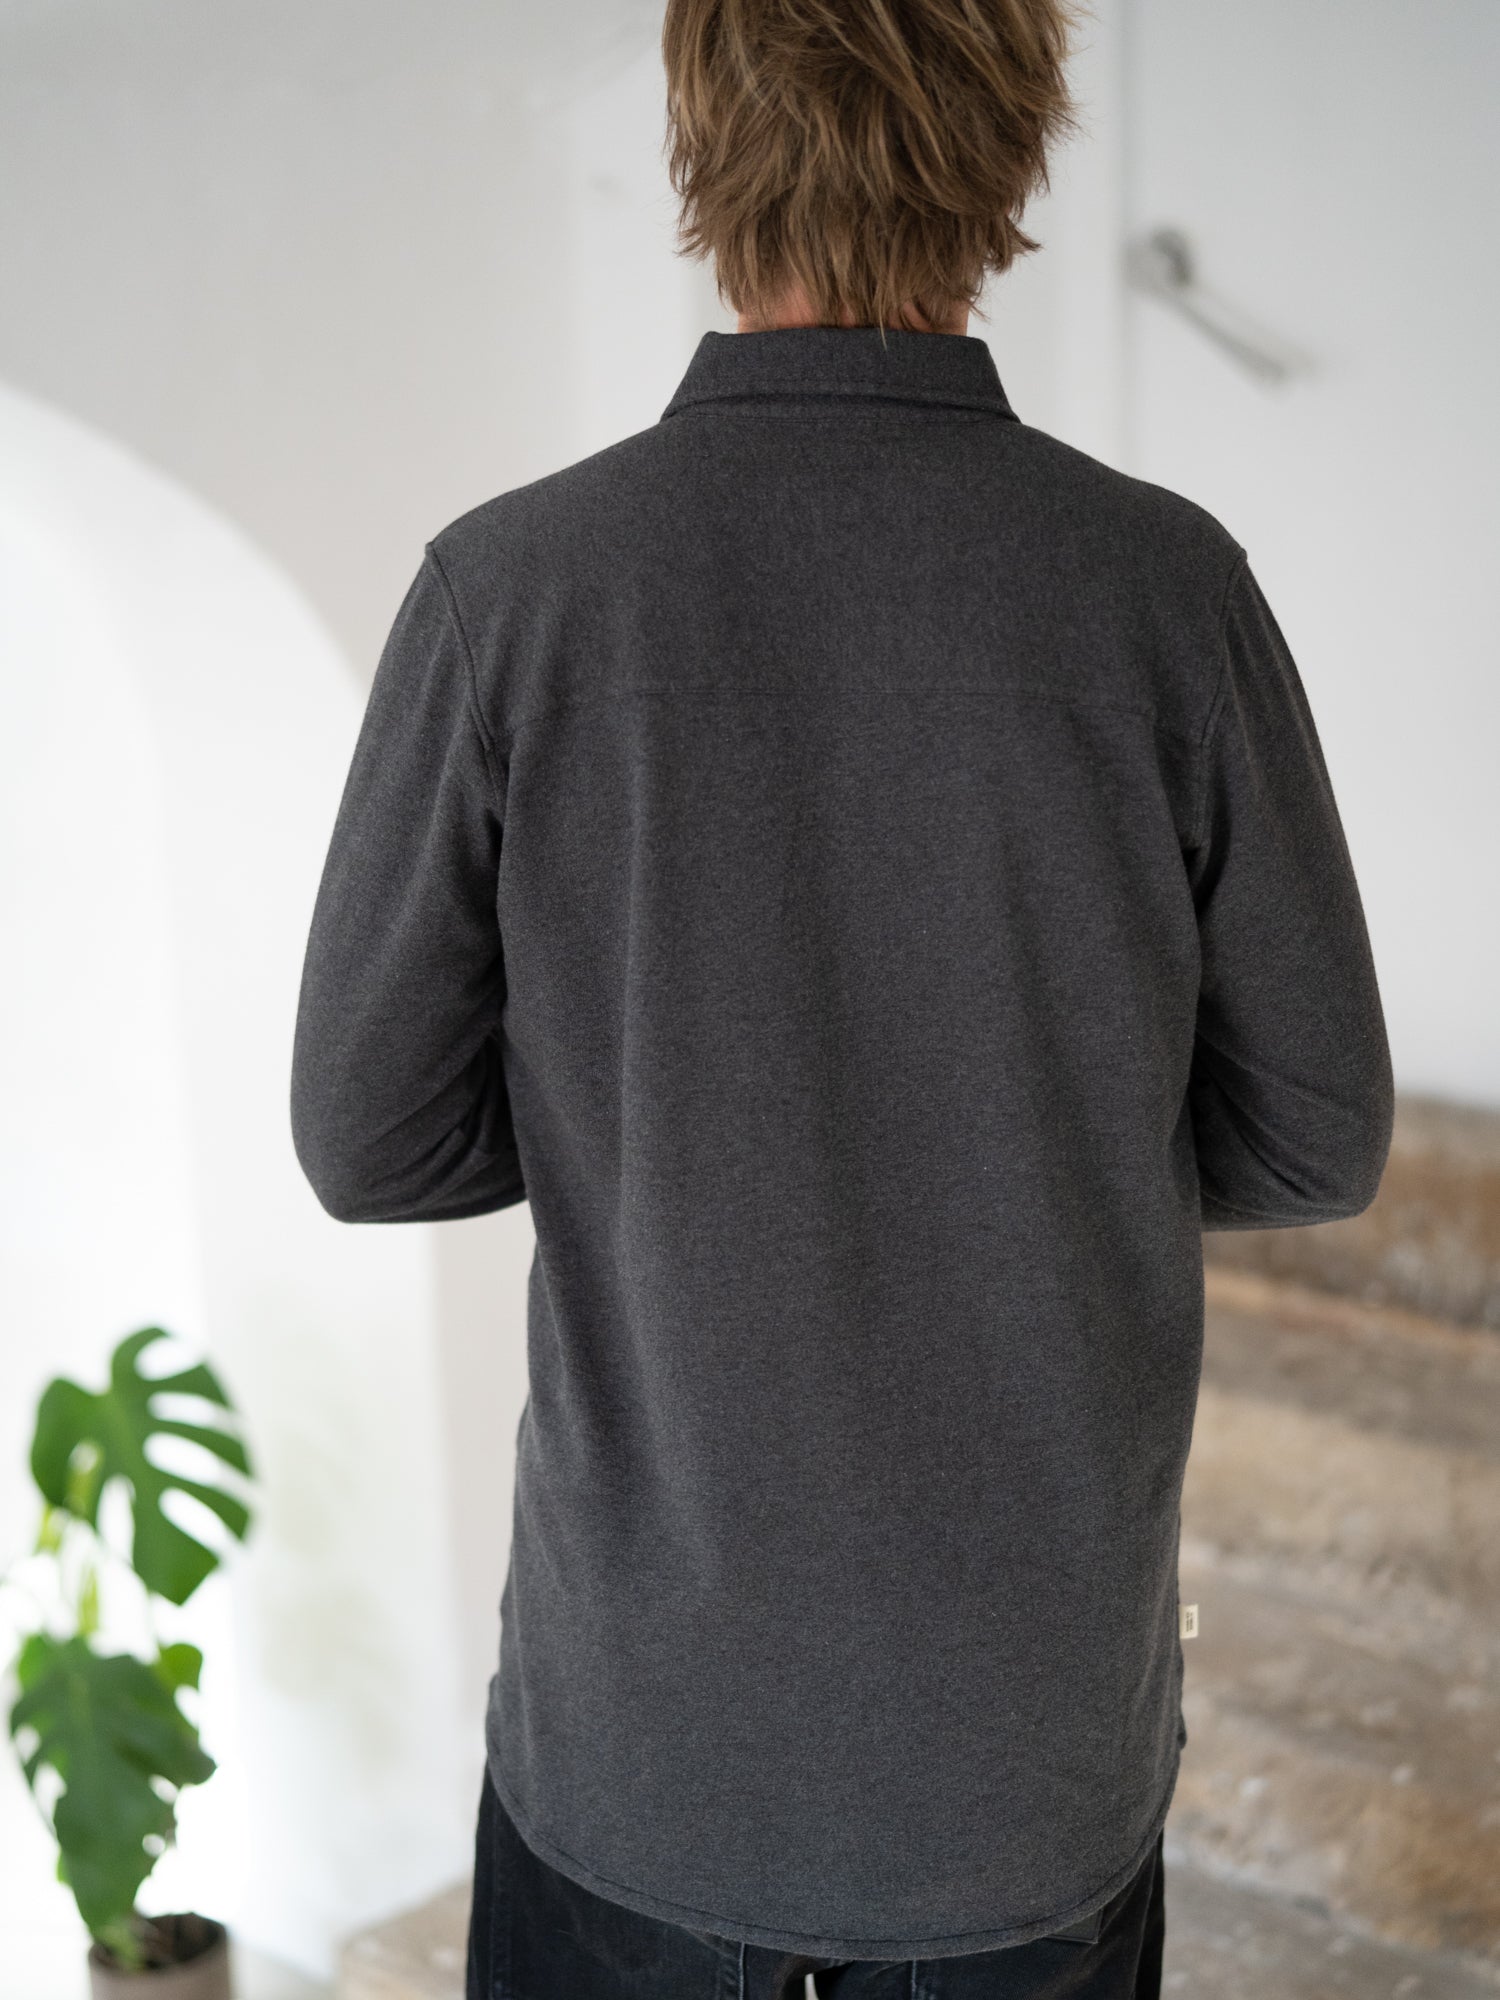 Nachhaltiges Fair Fashion Männer Hemd in anthrazit aus 100% GOTS zertifizierter Biobaumwolle von FUXBAU Made in Portugal.